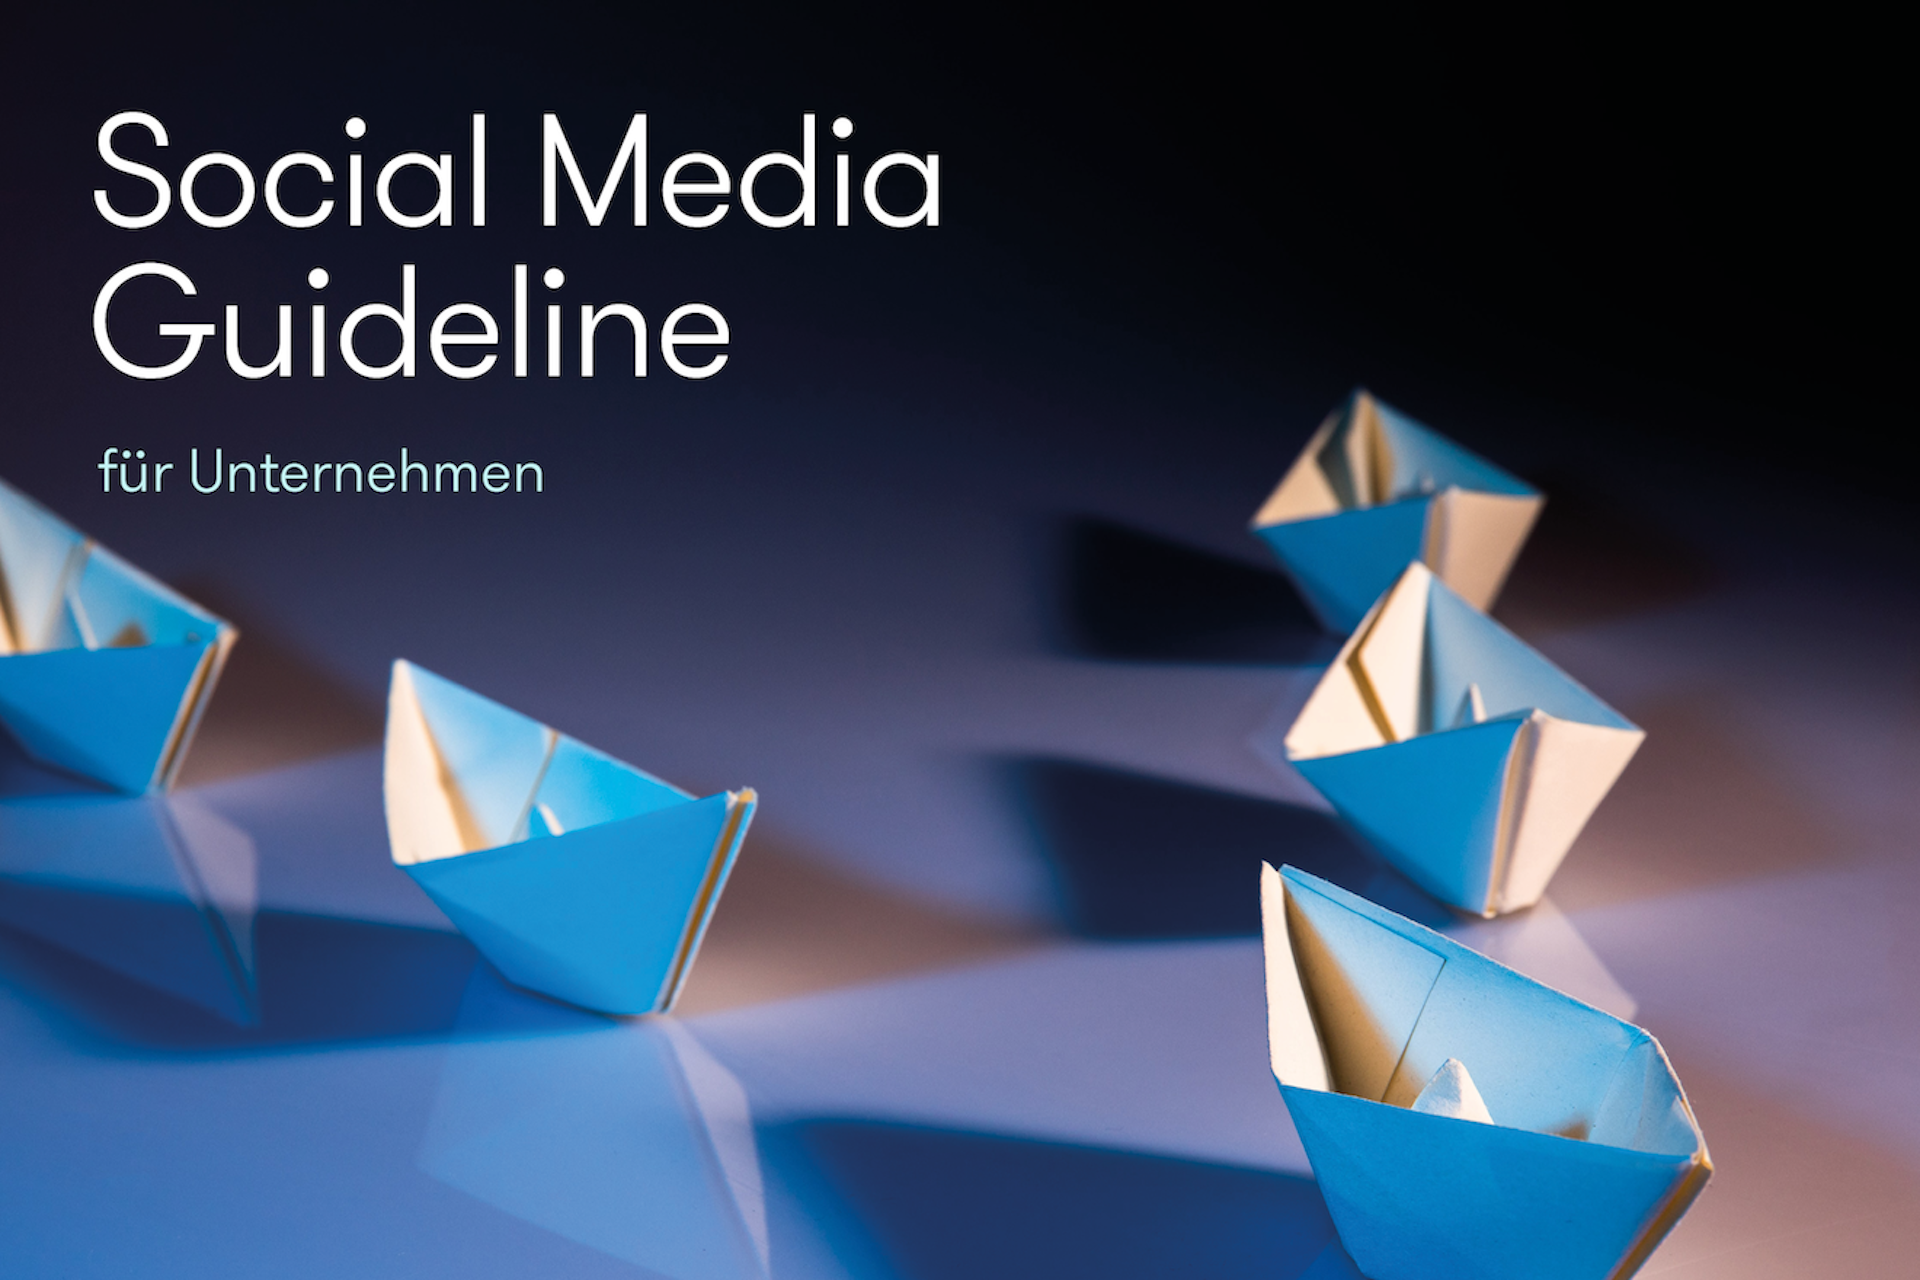 Social Media Guideline für Unternehmen Titelbild mit Papierschiffchen